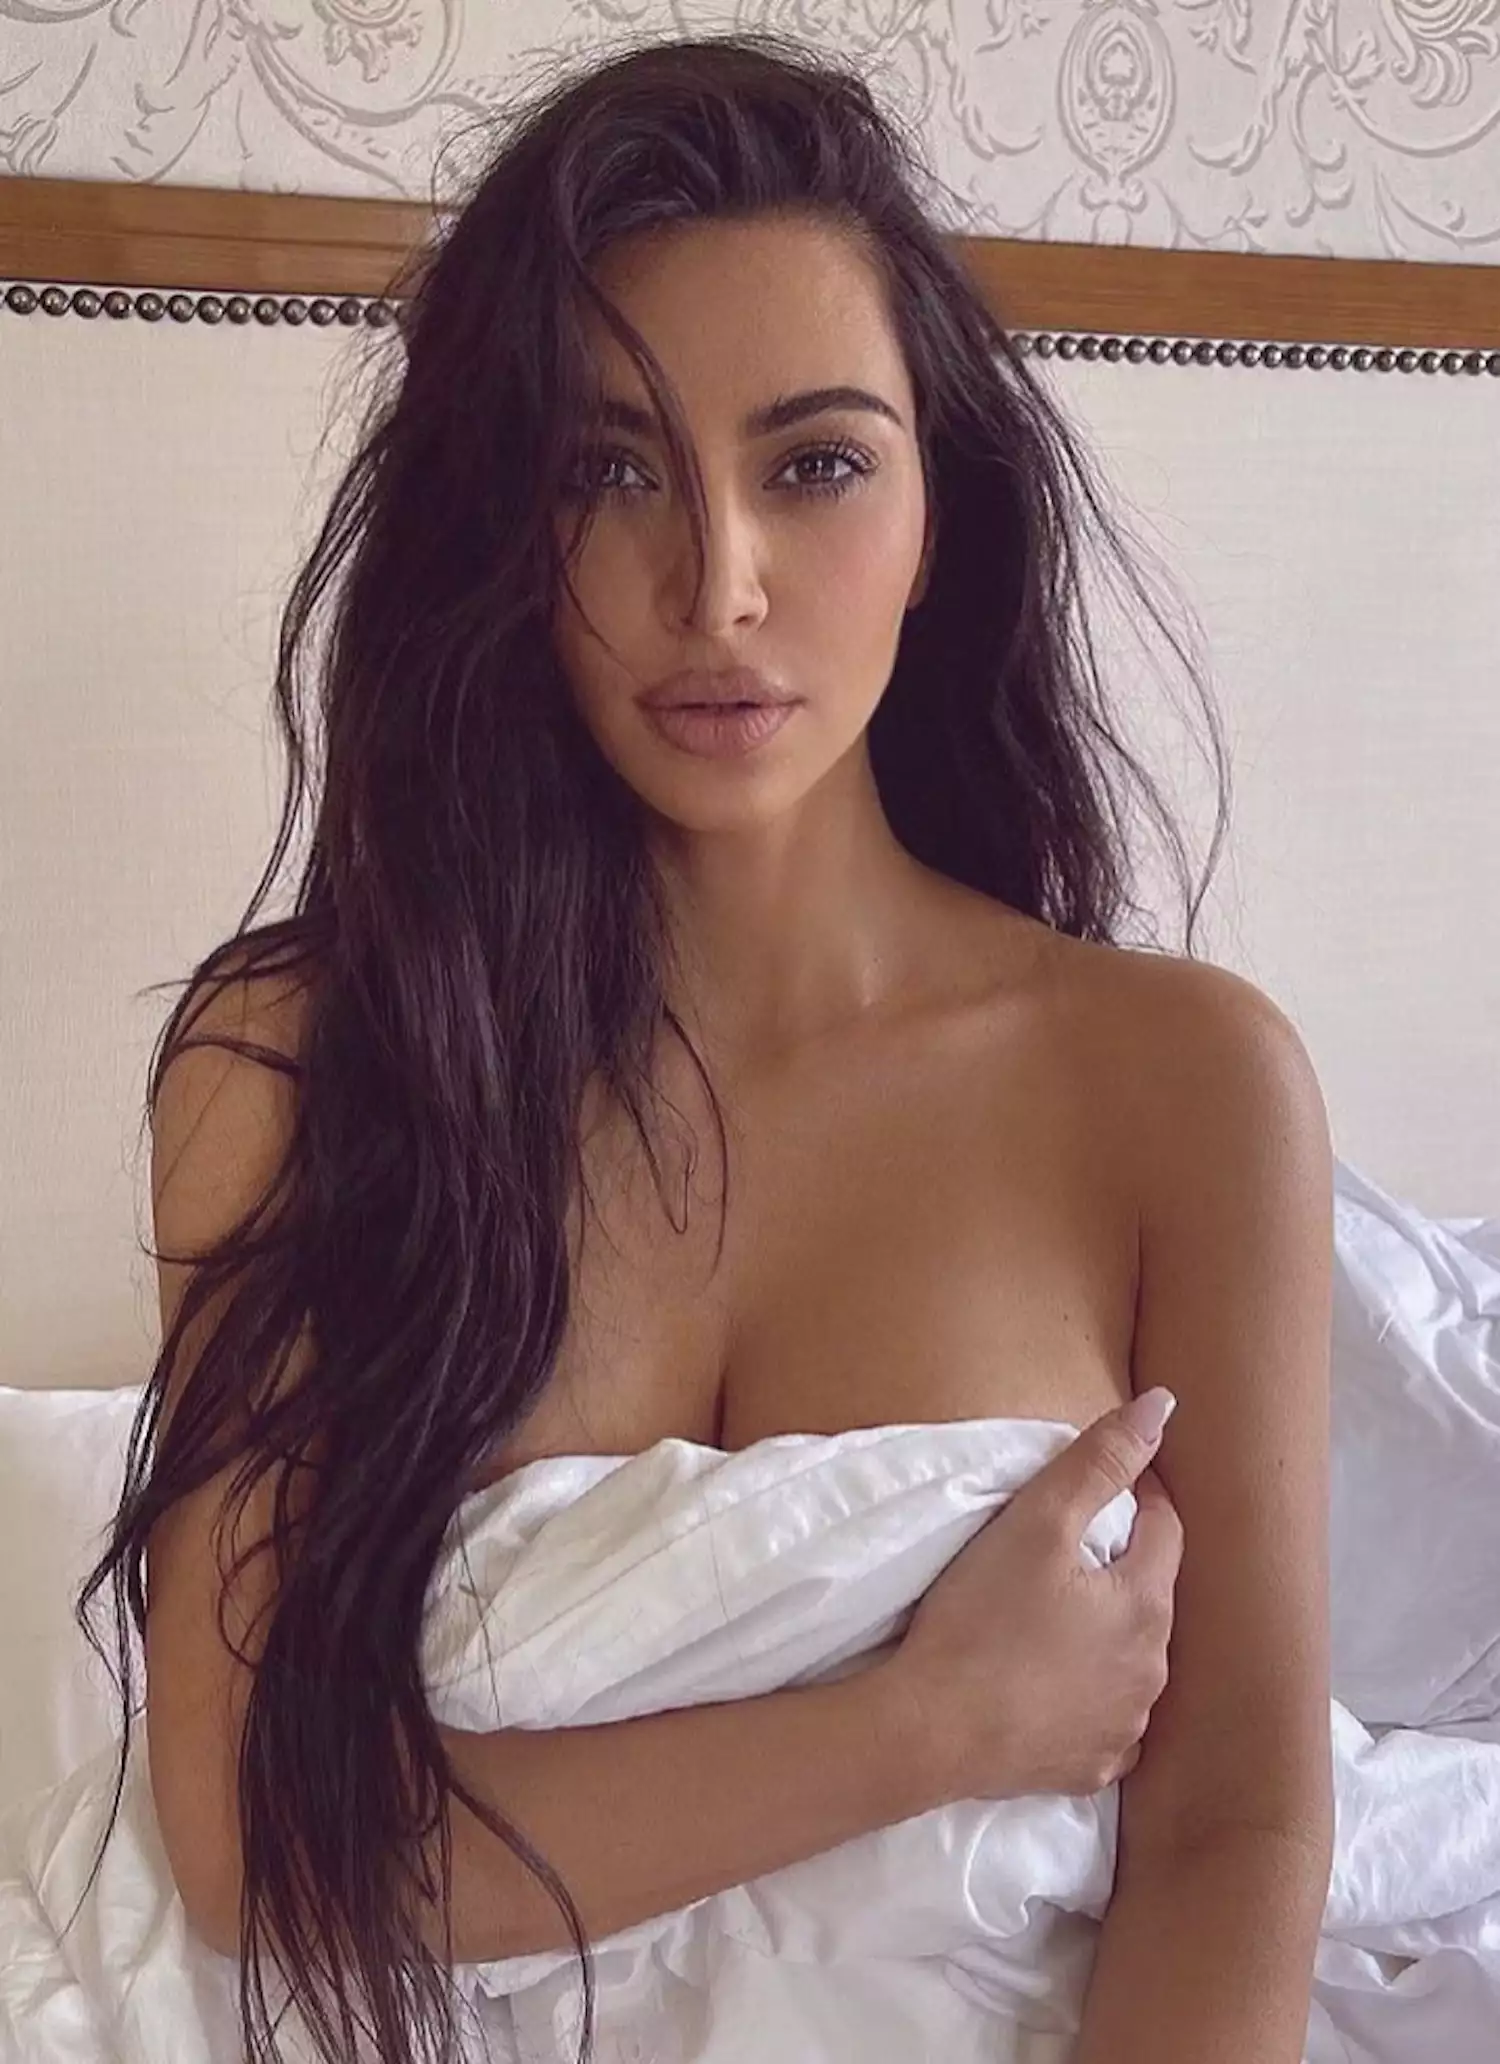 Kim Kardashian's Greatest Hair Moments: Air-Dried Texture